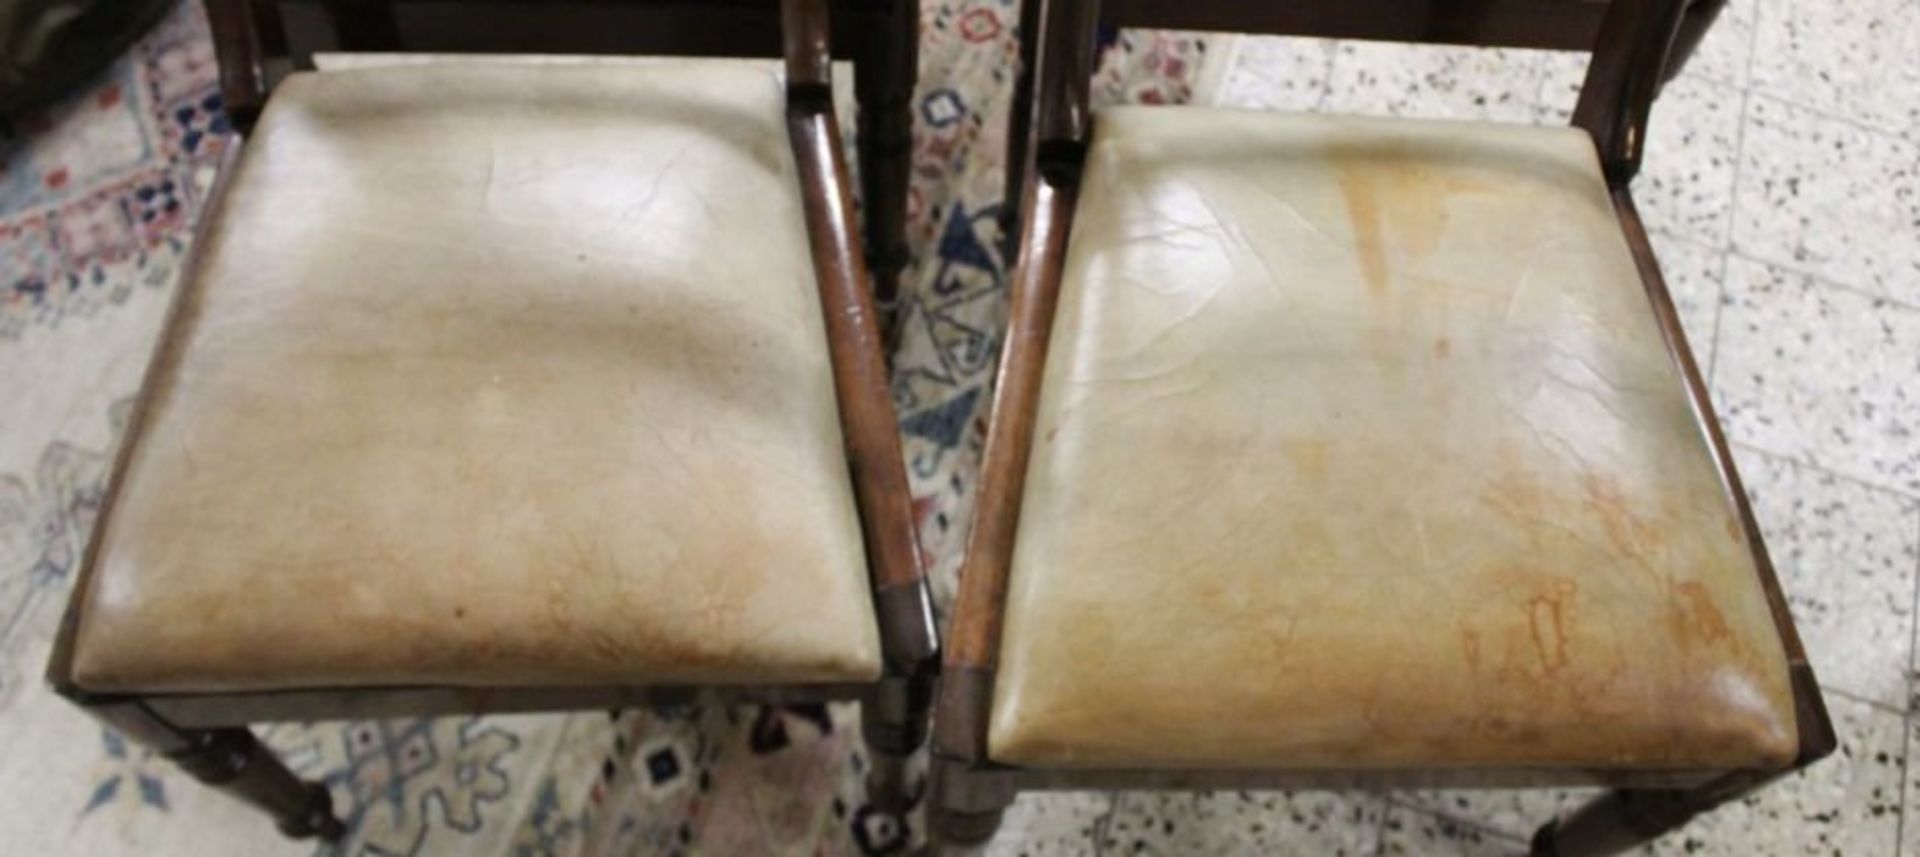 4x Biedermeier-Stühle, guter Zustand, lederbezogene Sitzfläche diese mit Gebrauchsspuren, H-86cm - Bild 2 aus 3